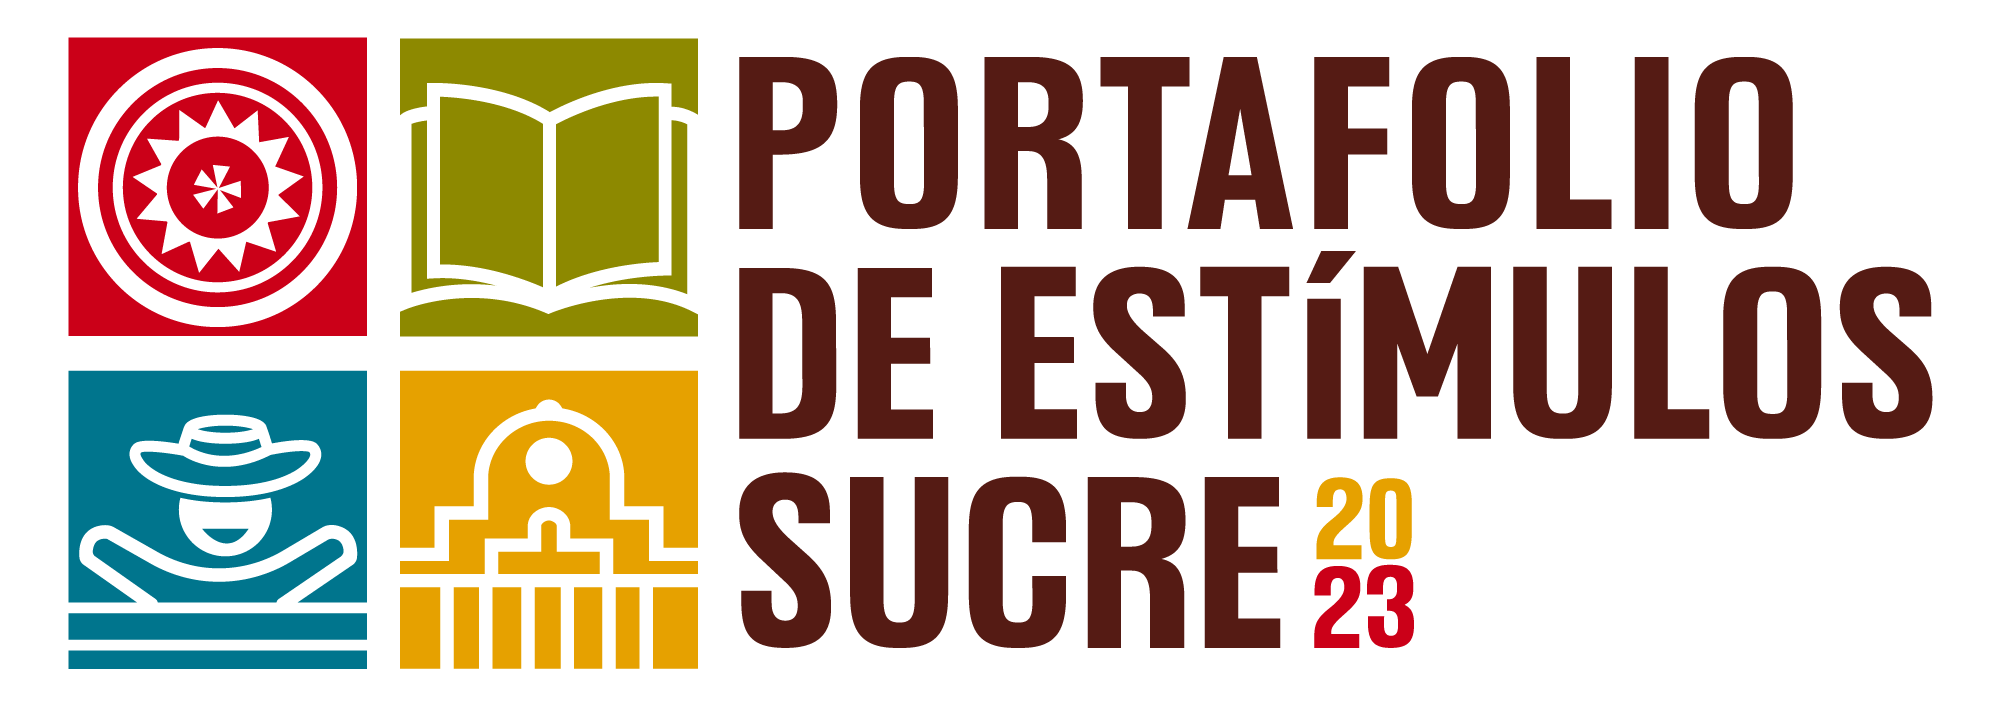 Logo-Portafolio-de-Estimulos-1